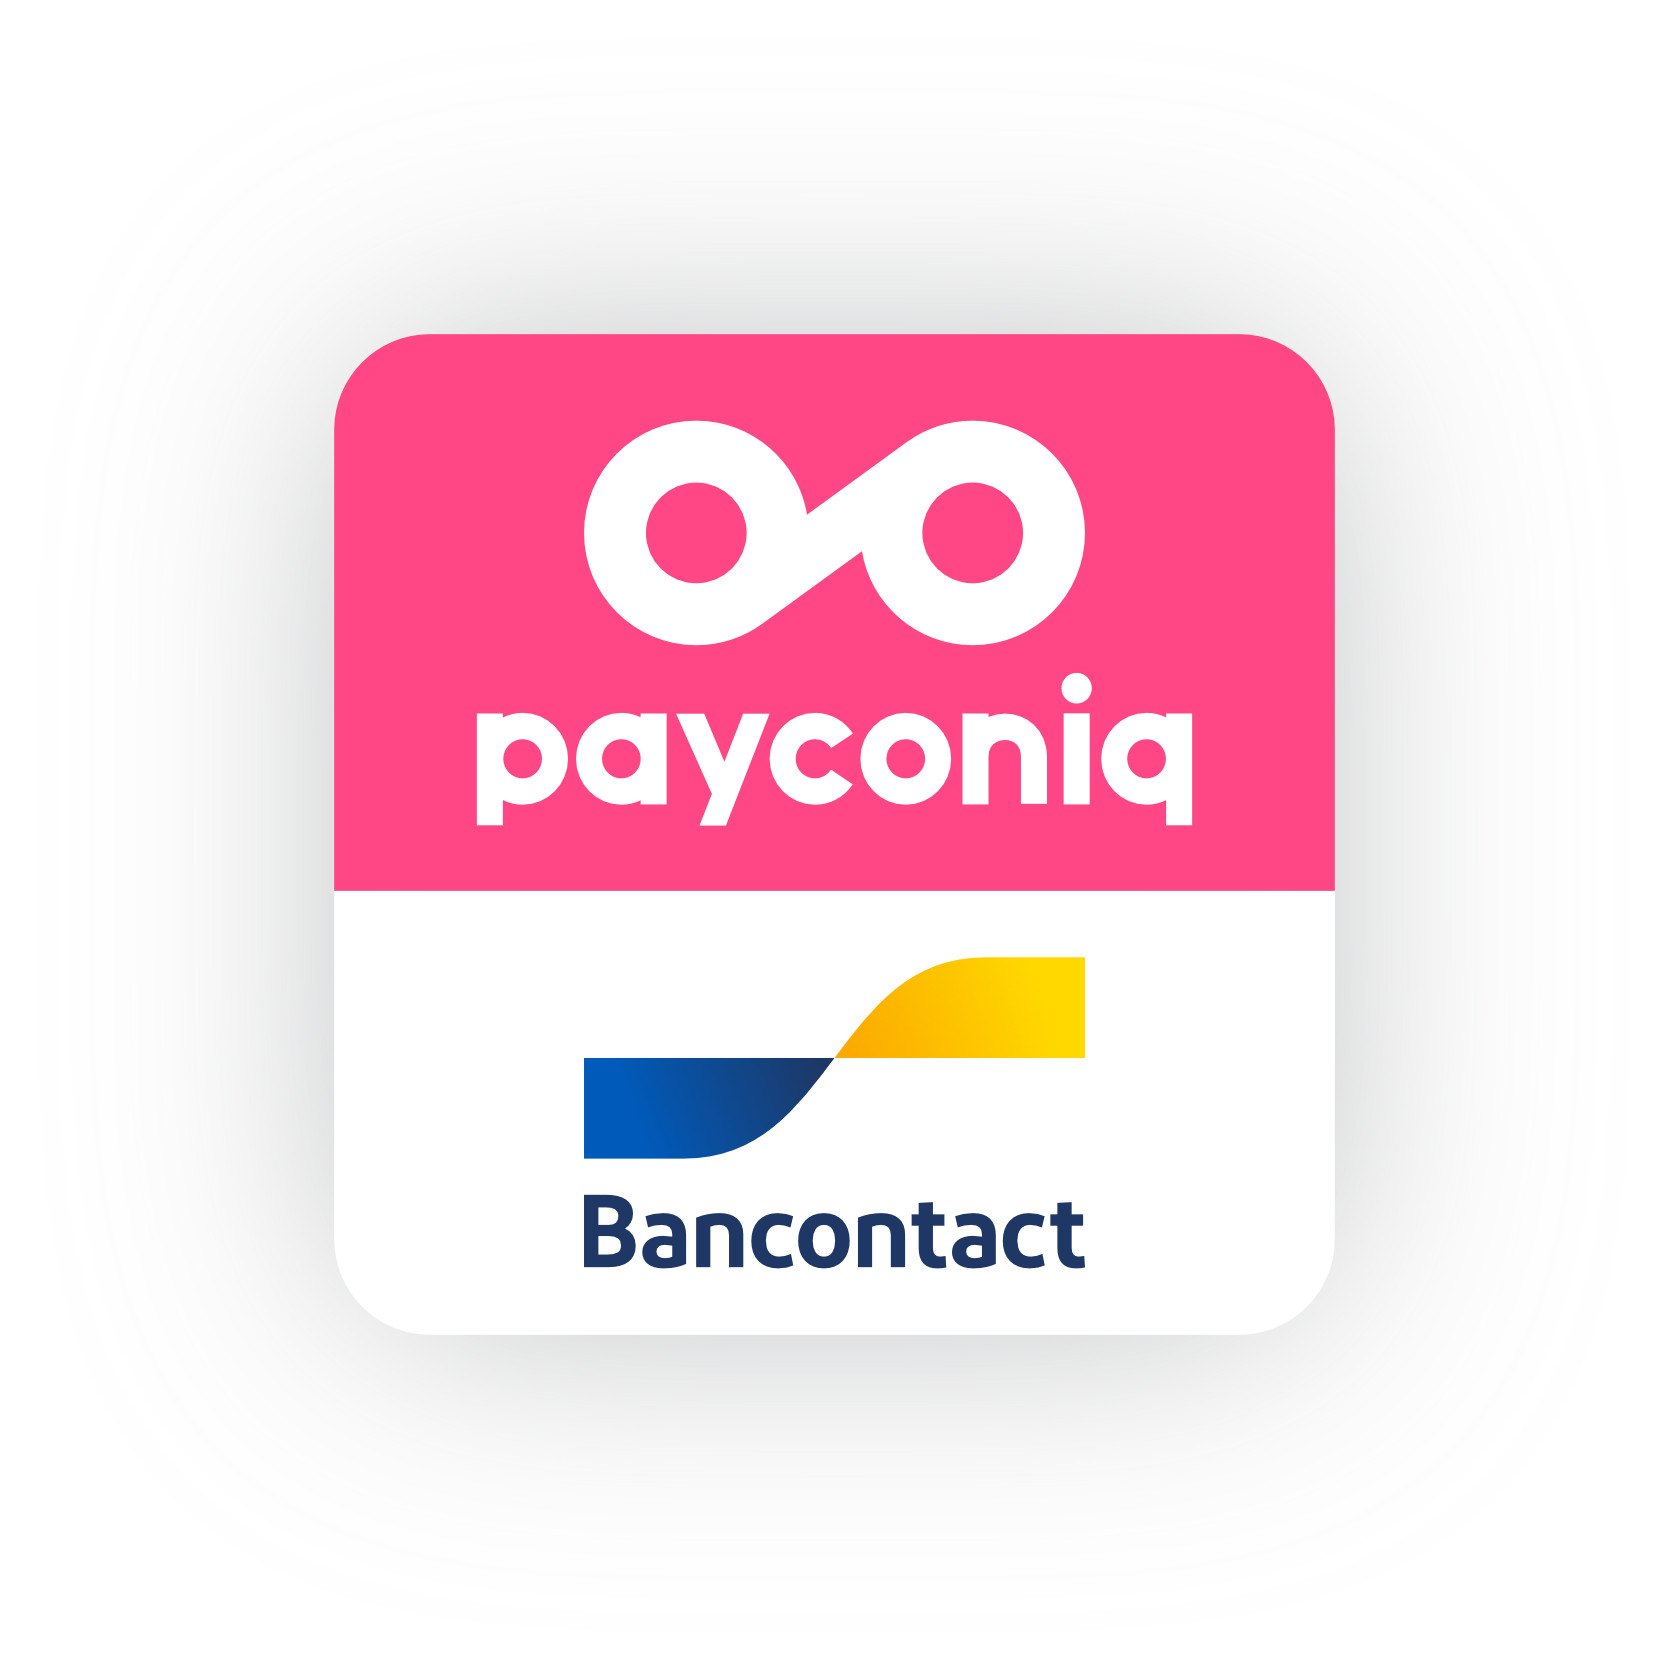 payconiq bancontact